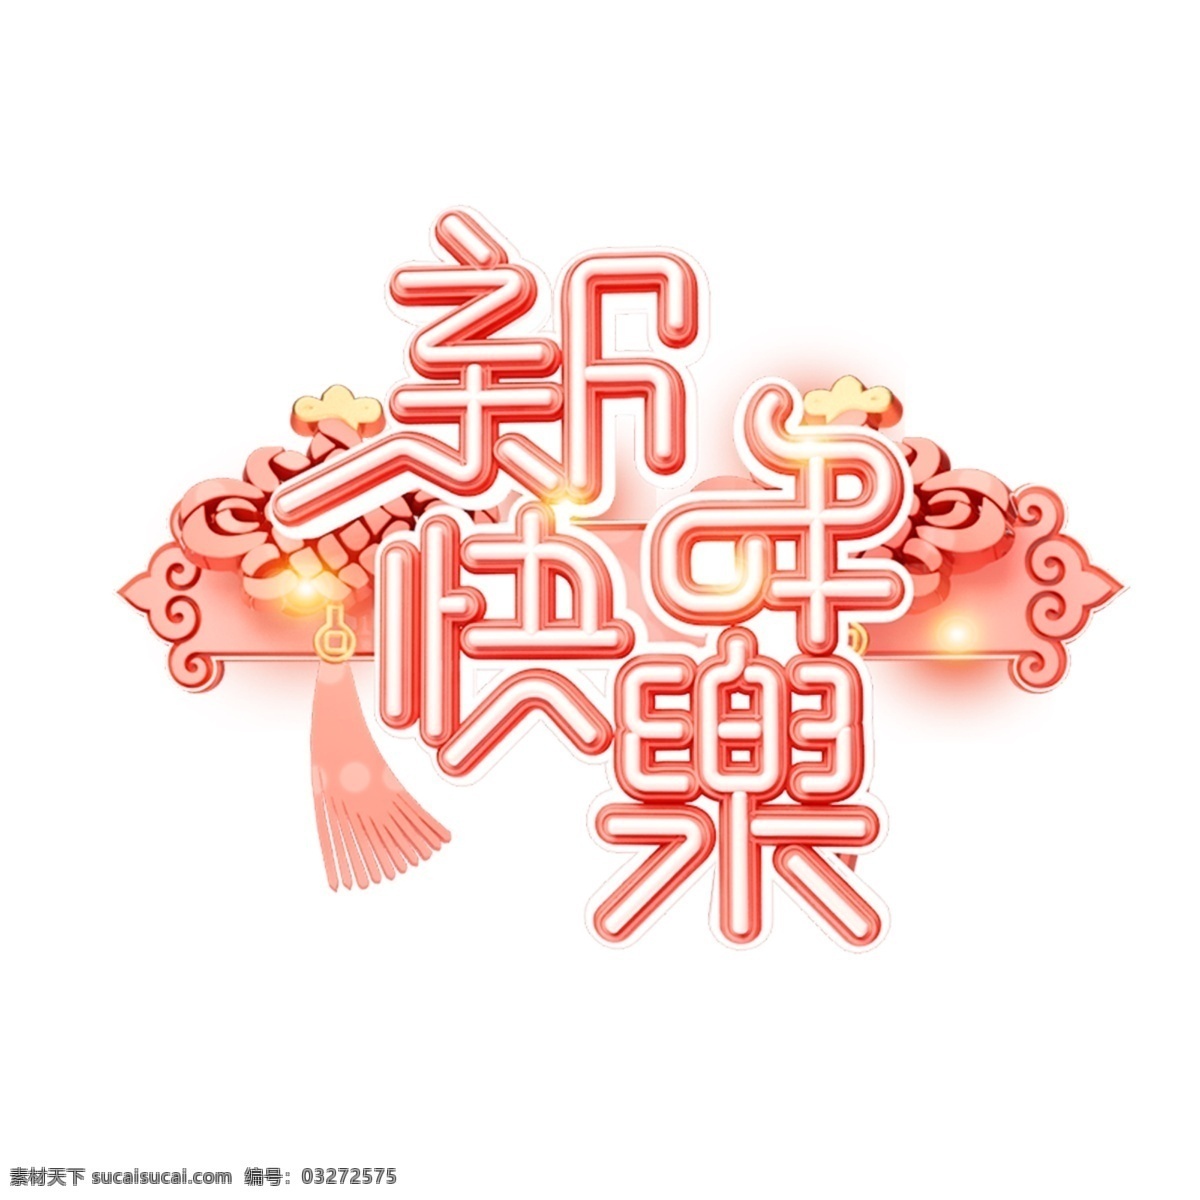 c4d 艺术 字 流行色 珊瑚 红 新年 快乐 字体 元素 新年快乐 海报字体 春节 艺术字 珊瑚红 新年艺术字 猪年 2019年